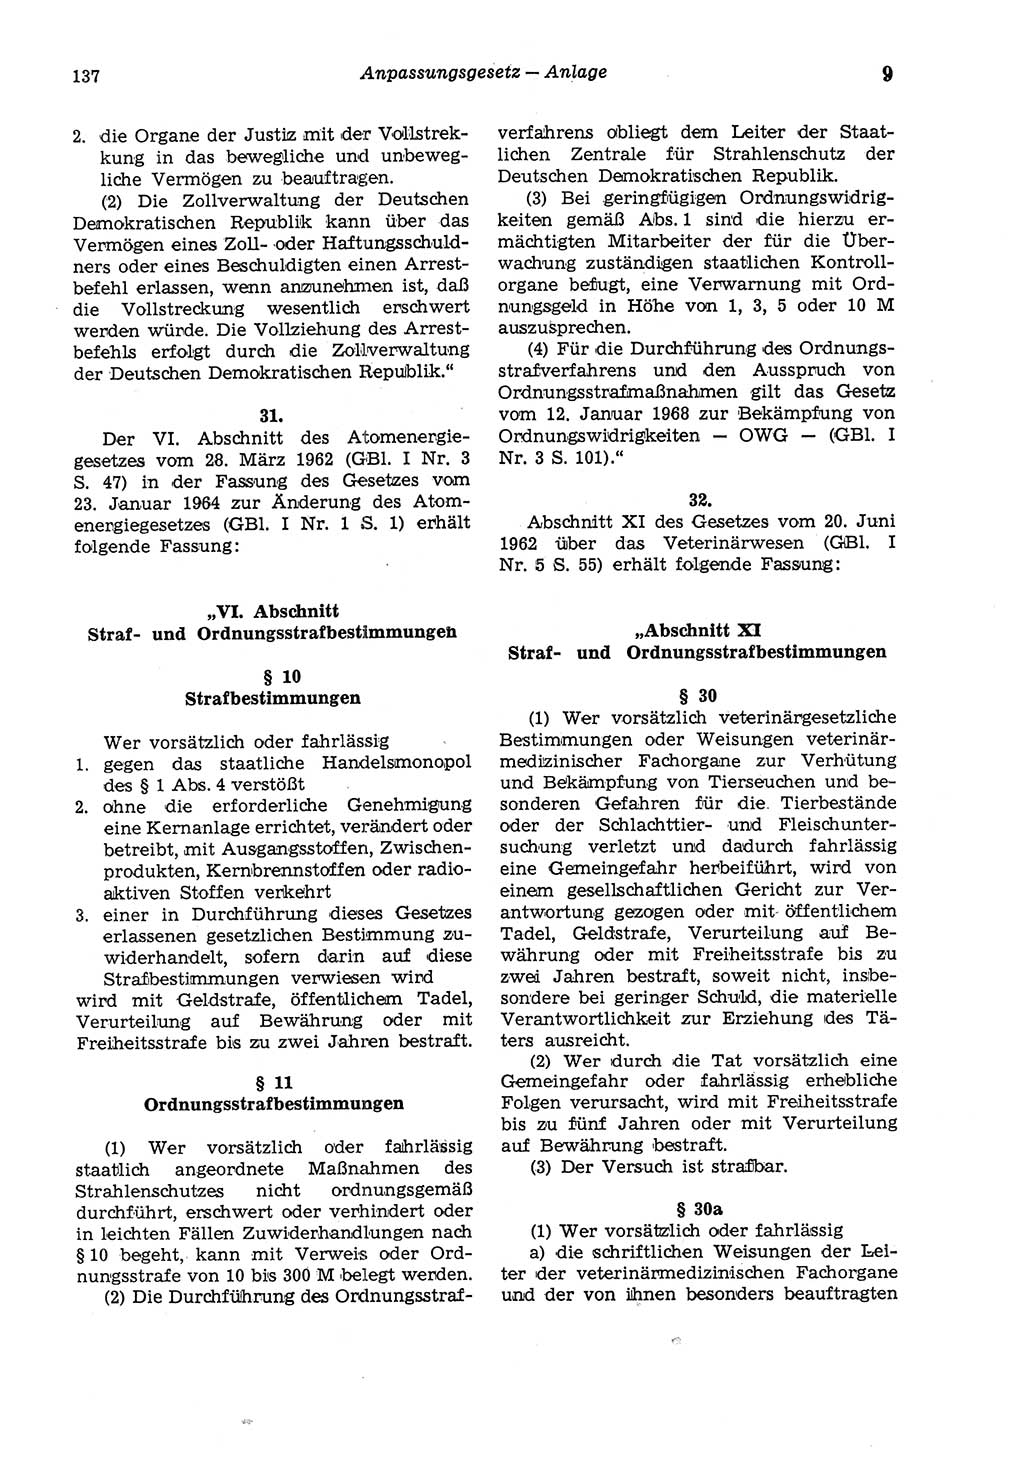 Strafgesetzbuch (StGB) der Deutschen Demokratischen Republik (DDR) und angrenzende Gesetze und Bestimmungen 1975, Seite 137 (StGB DDR Ges. Best. 1975, S. 137)